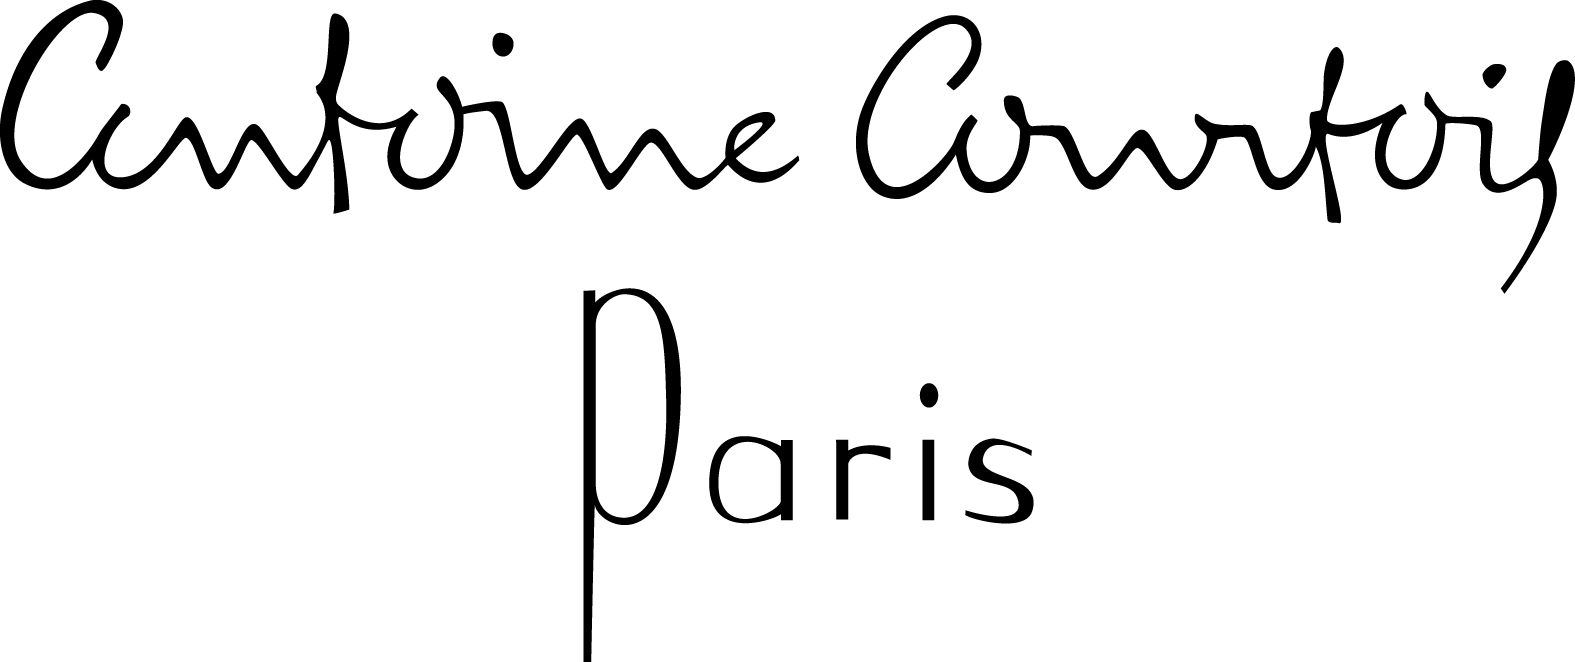 AntoineCourtois_Logo_black